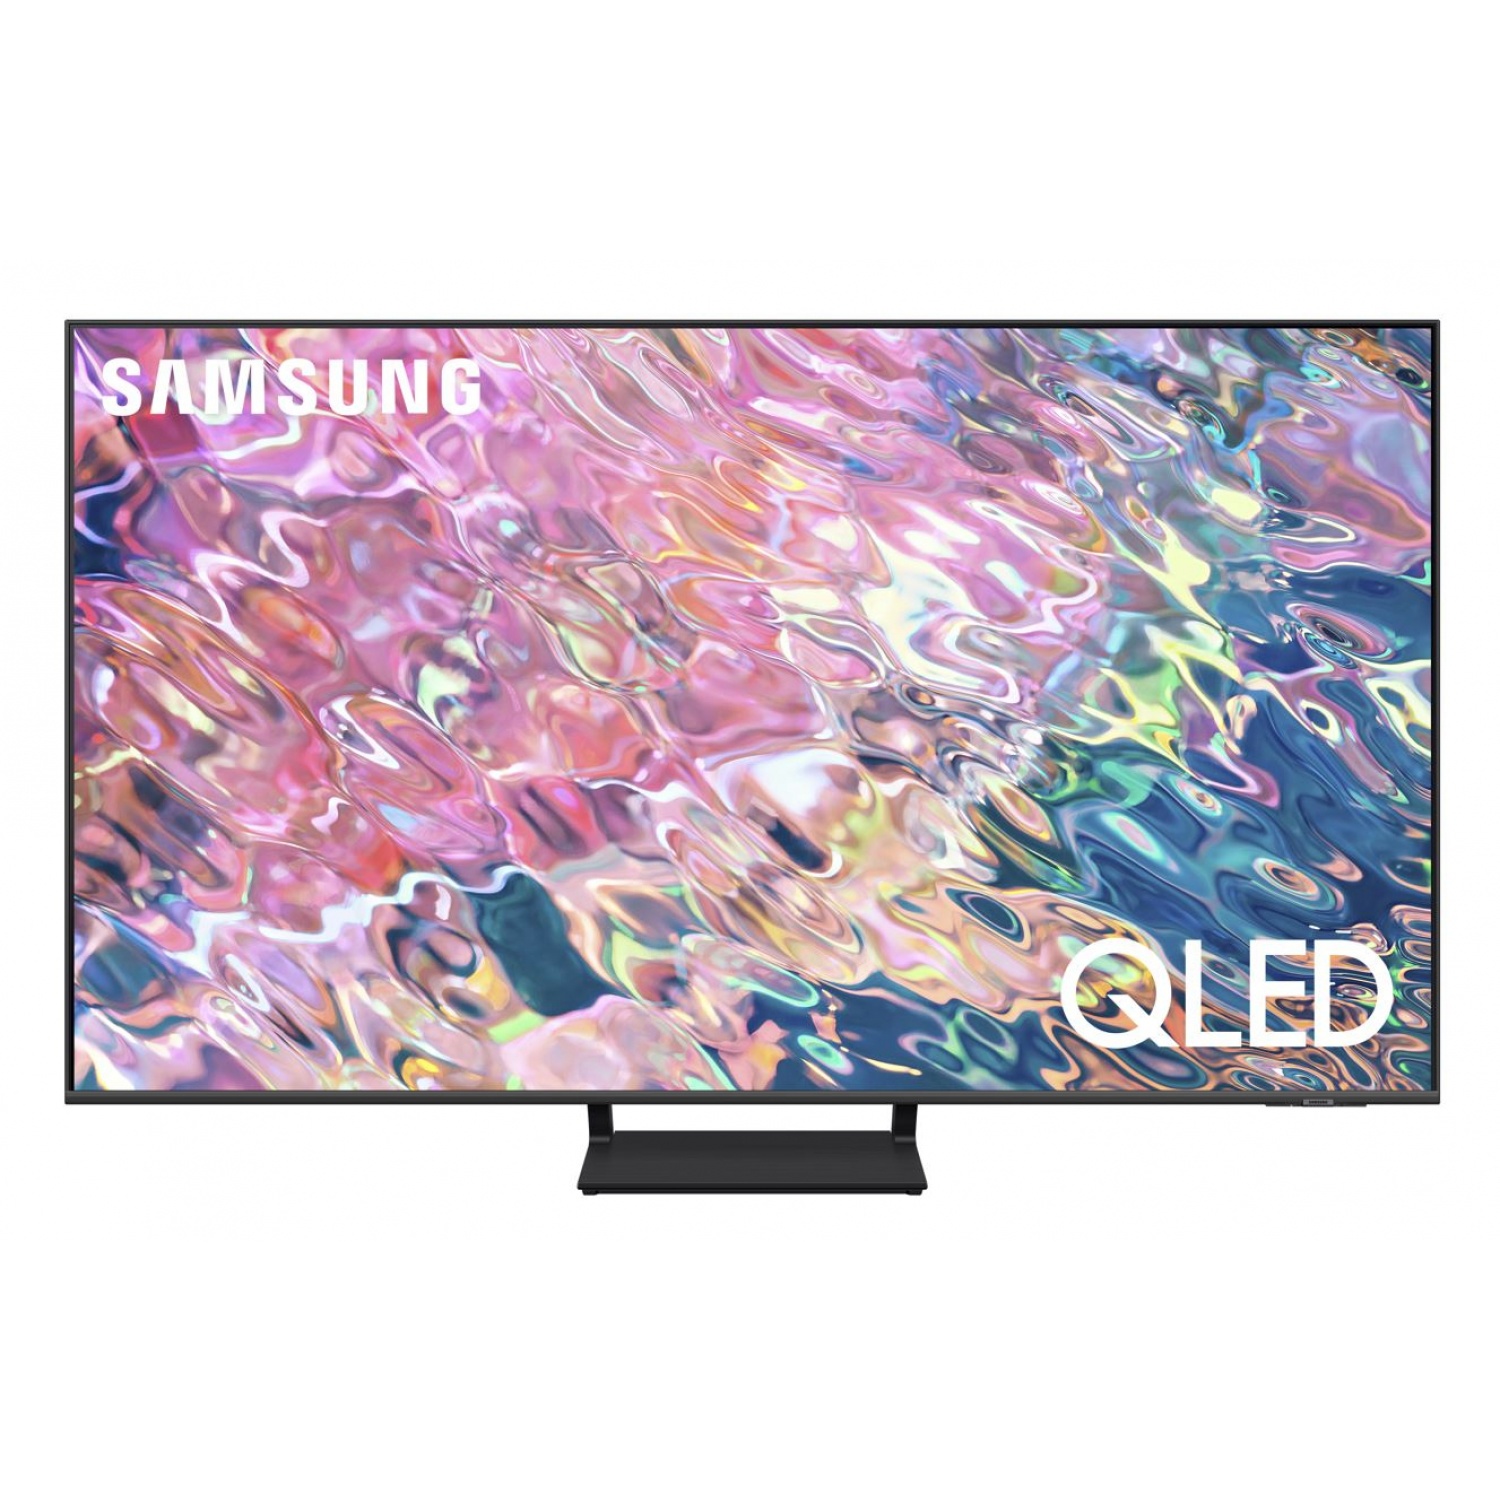 SAMSUNG QLED TV ขนาด 55 นิ้ว รุ่น QA55Q65BAKXXT  สีดำ